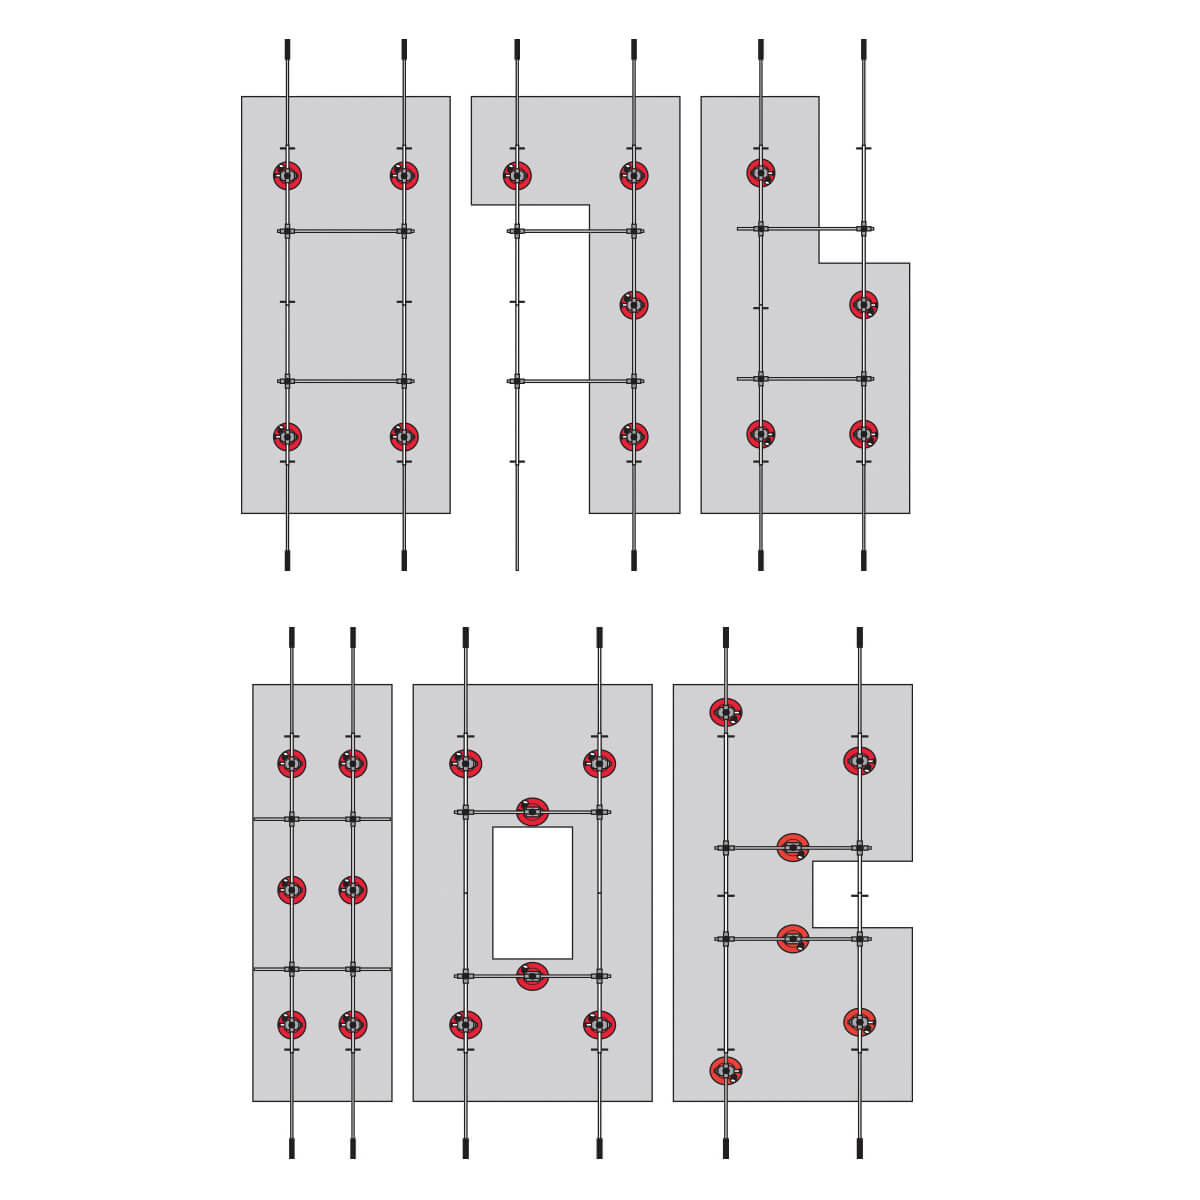 Montolit "SuperLift" Handling System for Large Tiles